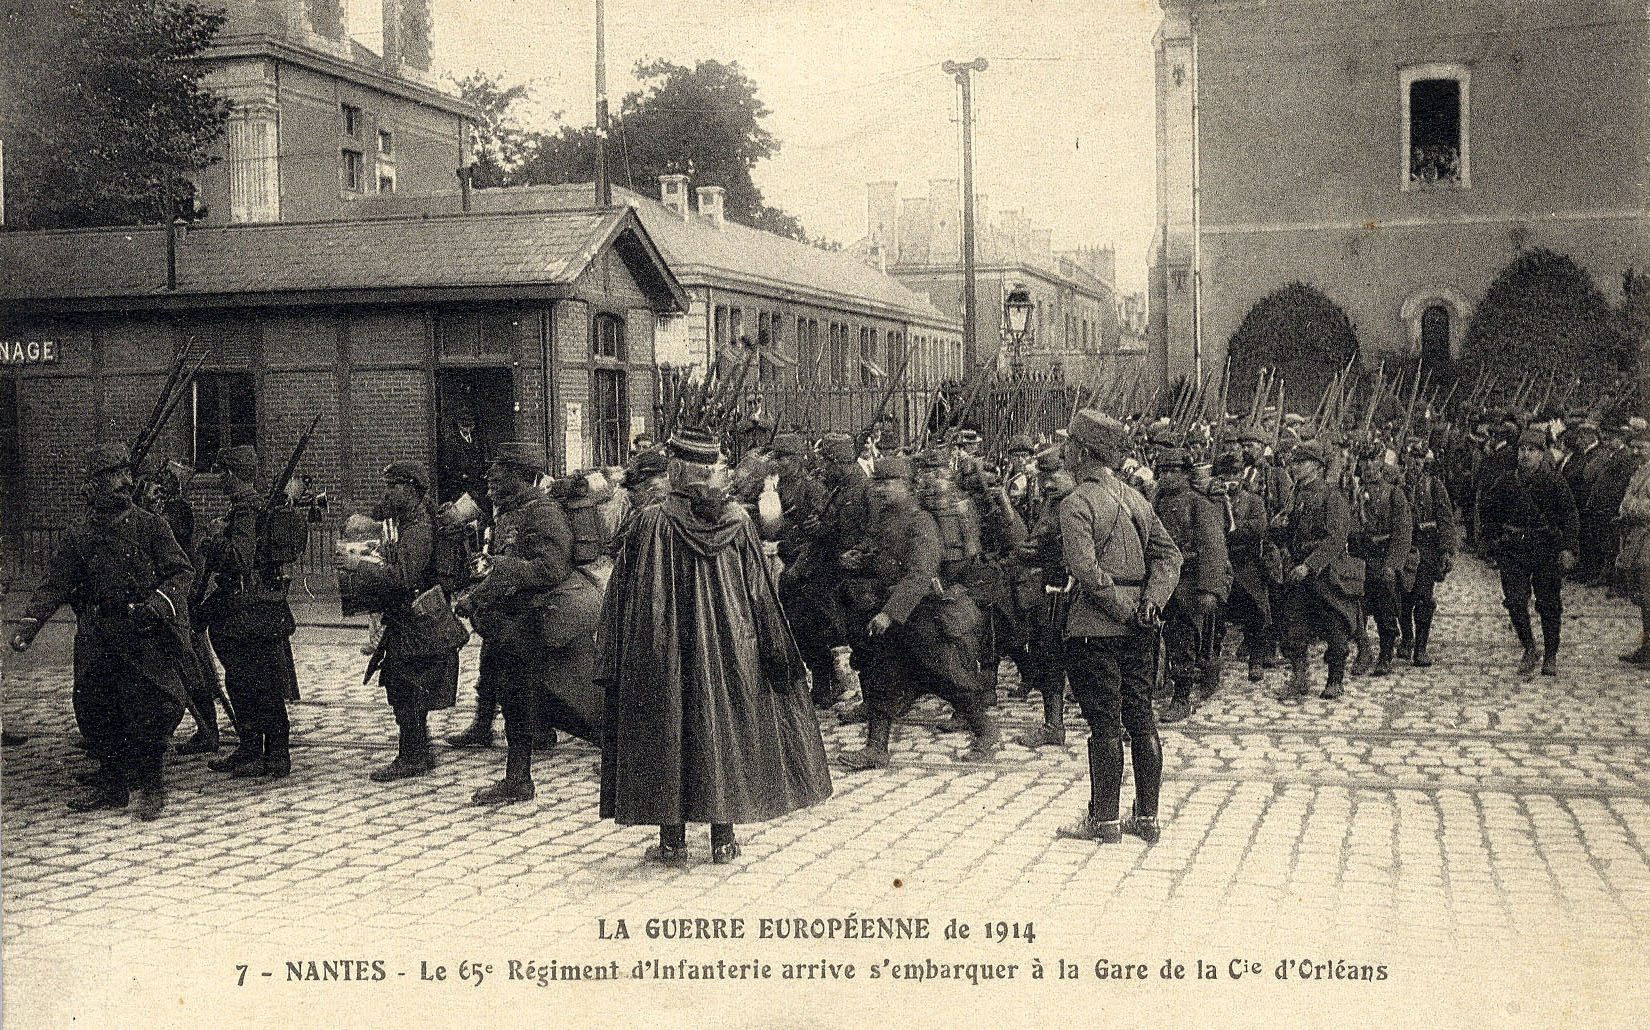 Le 65è Régiment d'Infanterie arrive s'embarquer à la gare de la Compagnie d'Orléans à Nantes, en 1914 (9Fi1573)